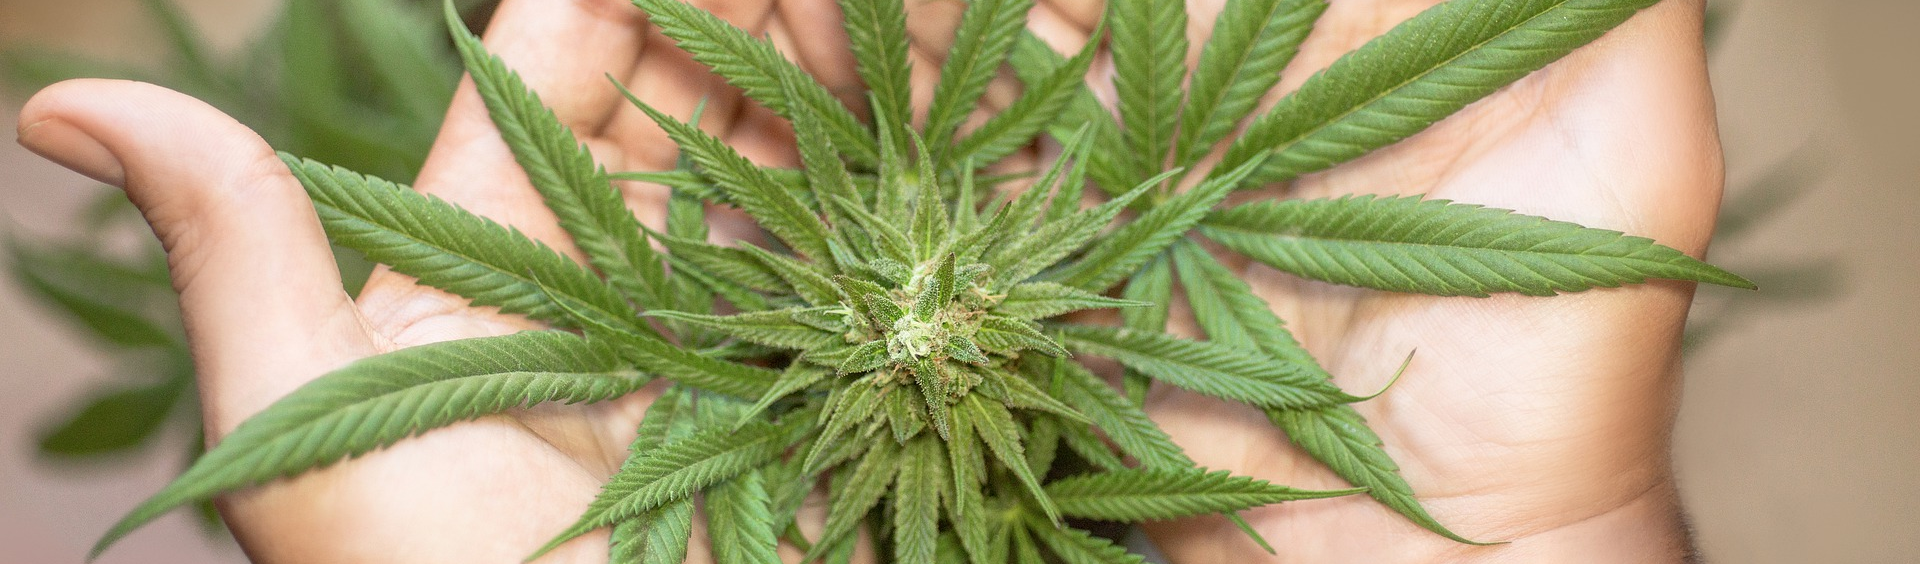 Argentina permitirá vendas de cannabis em farmácias e cultivo doméstico